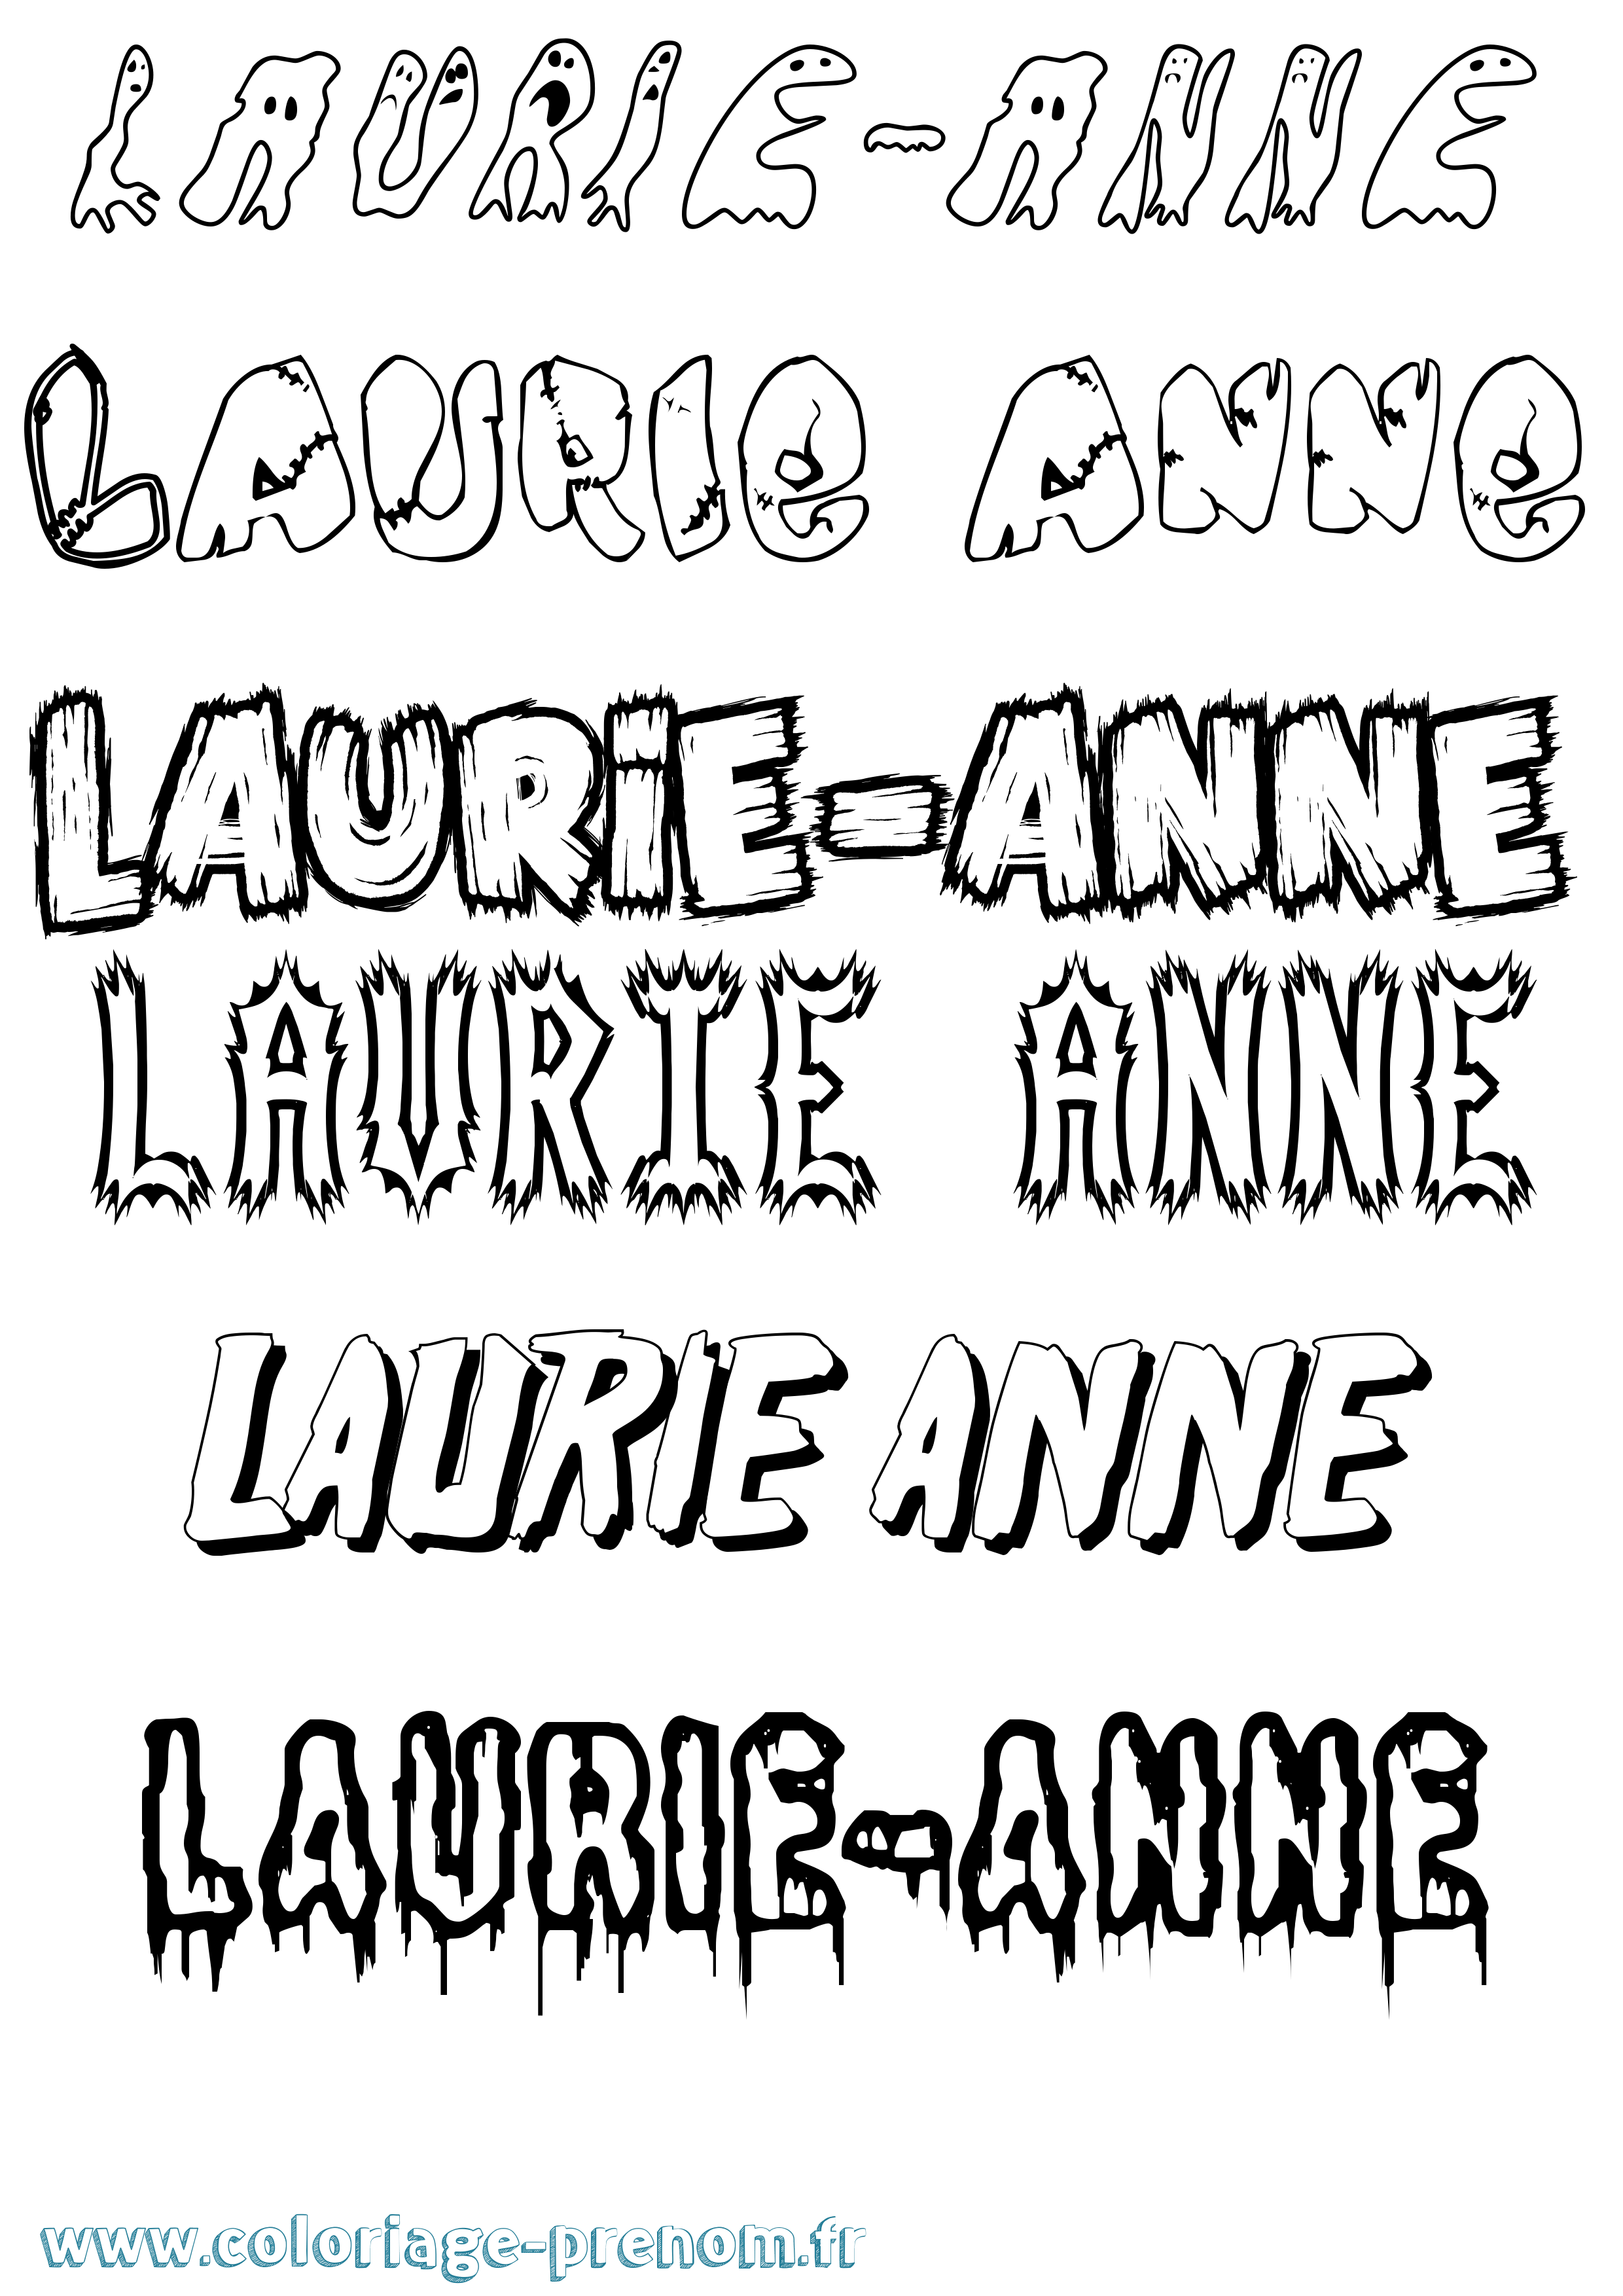 Coloriage prénom Laurie-Anne Frisson